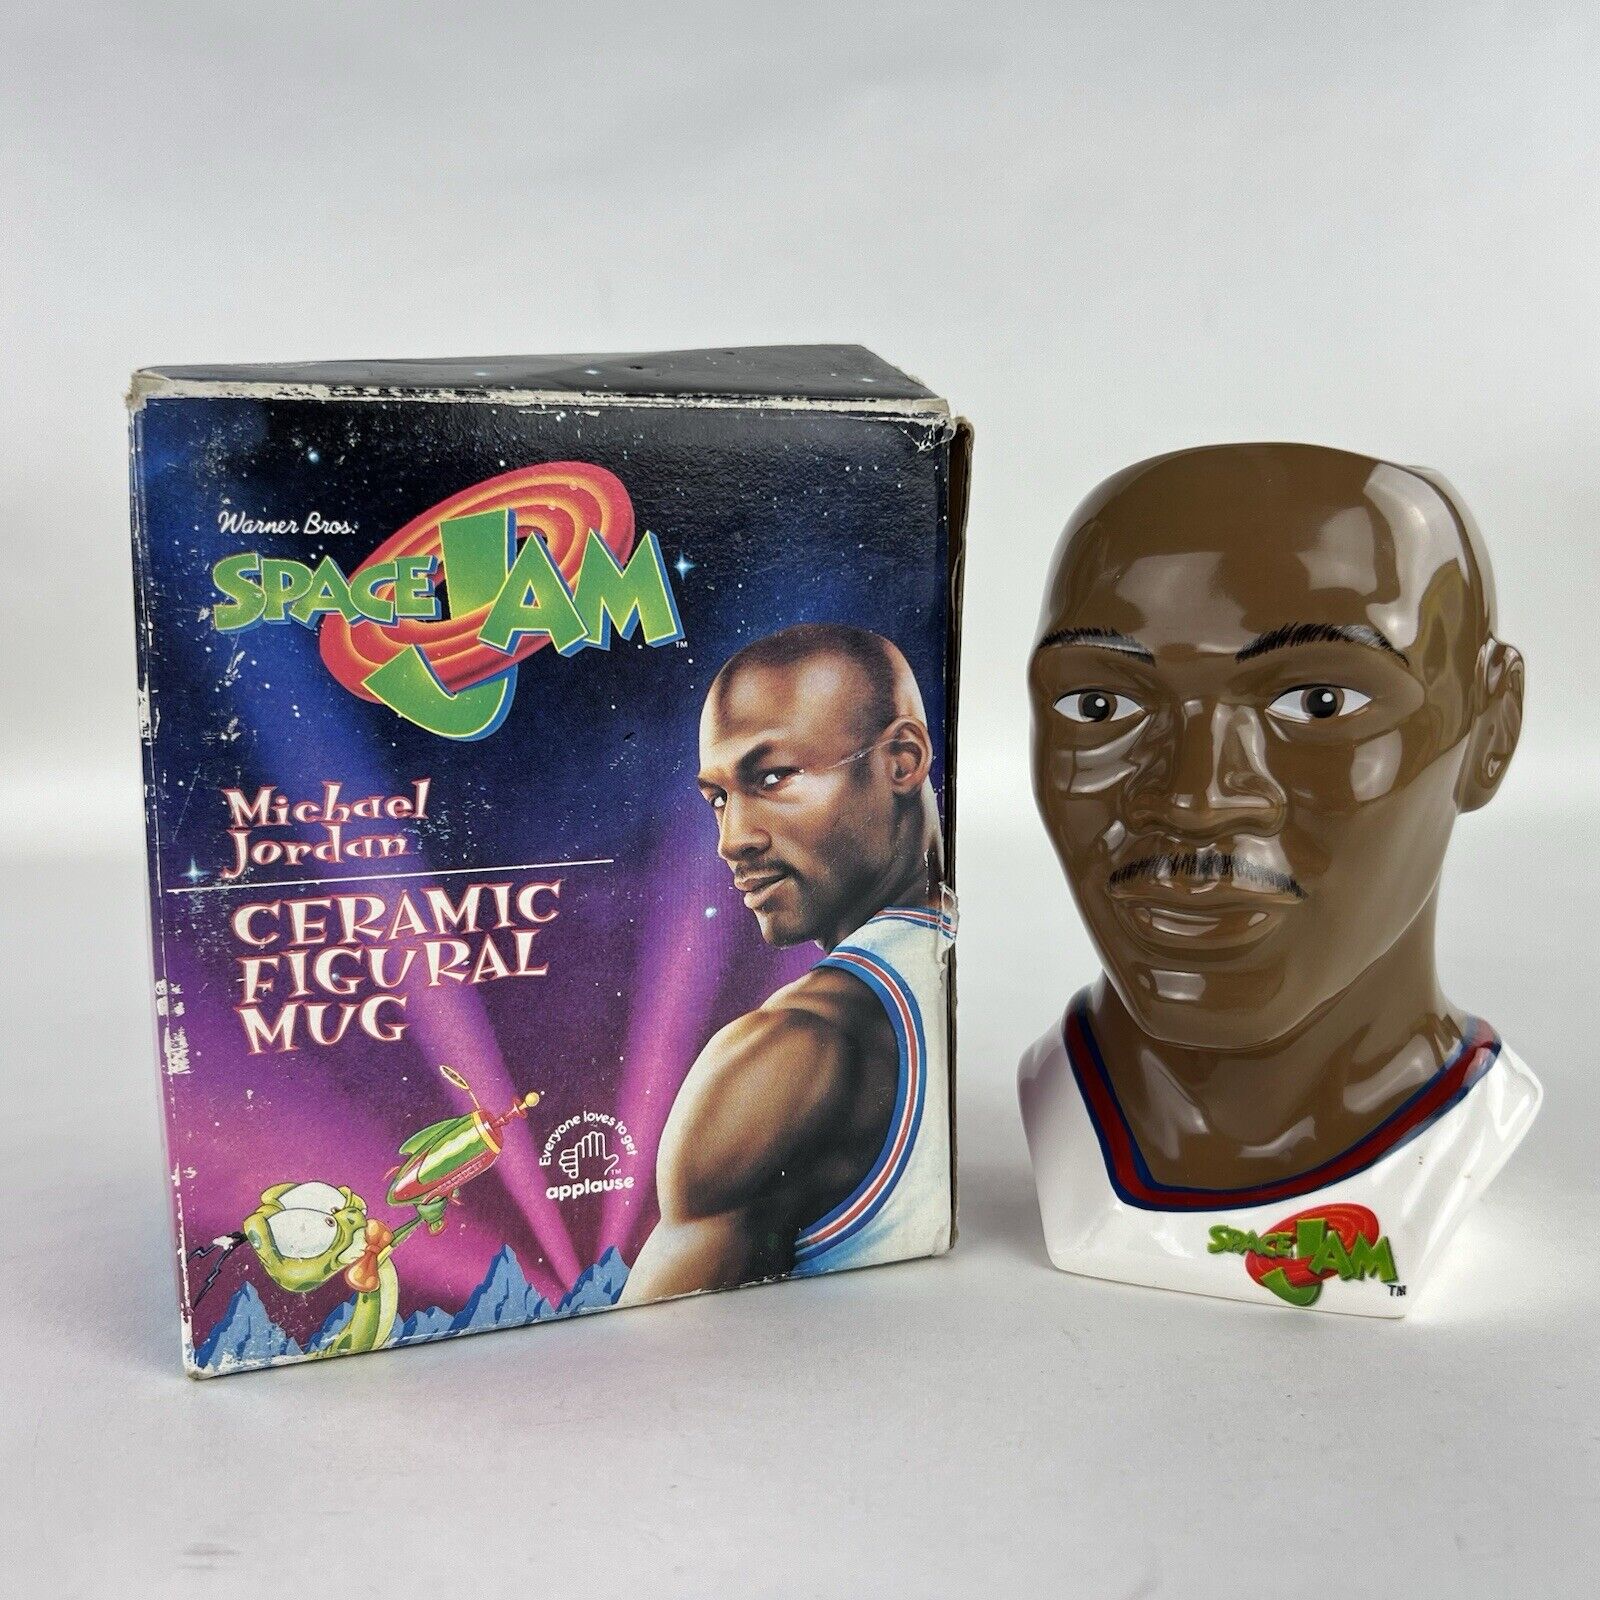 Warner Bros Space Jam Michael Jordan Ceramic Figural Mug New In Box Vintage 1996